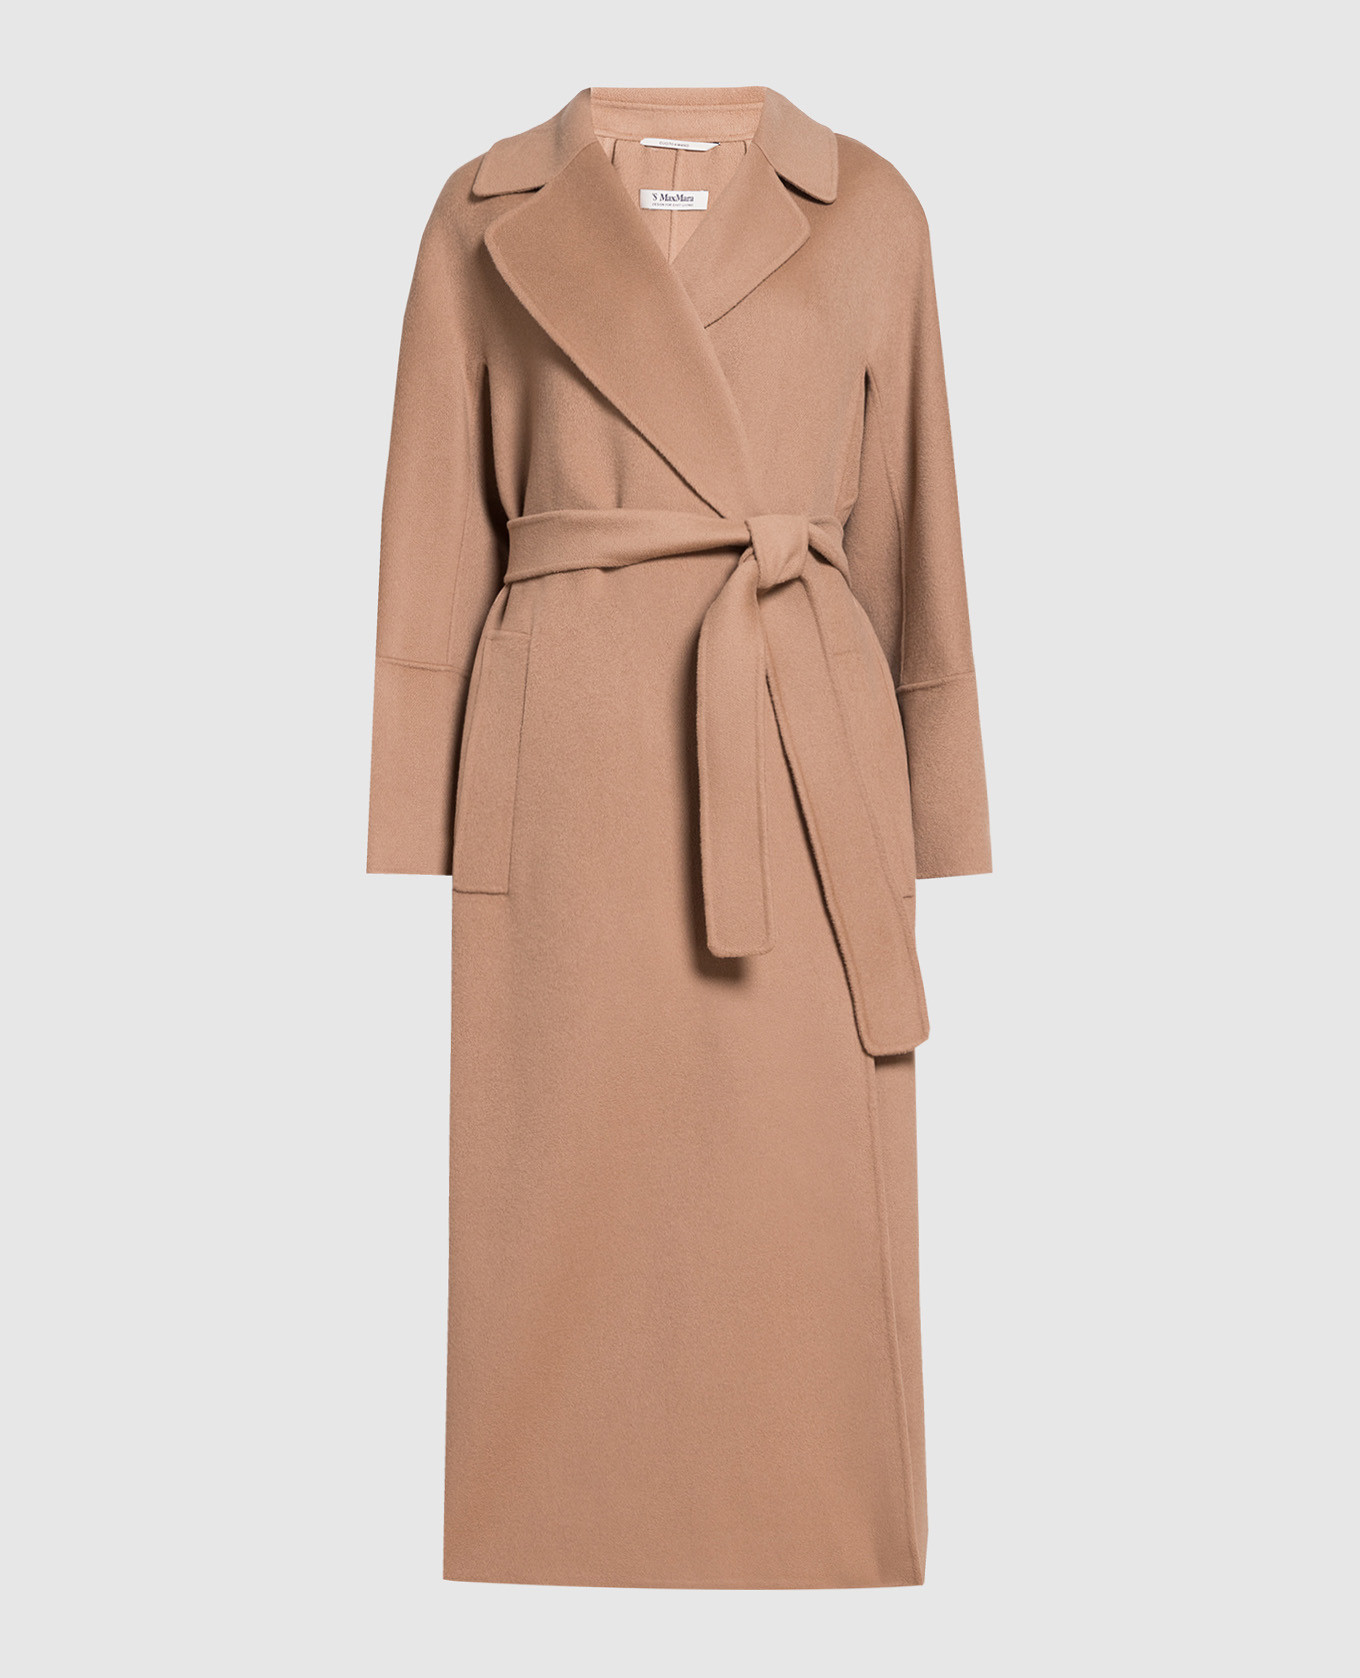 ELISA brown wool coat